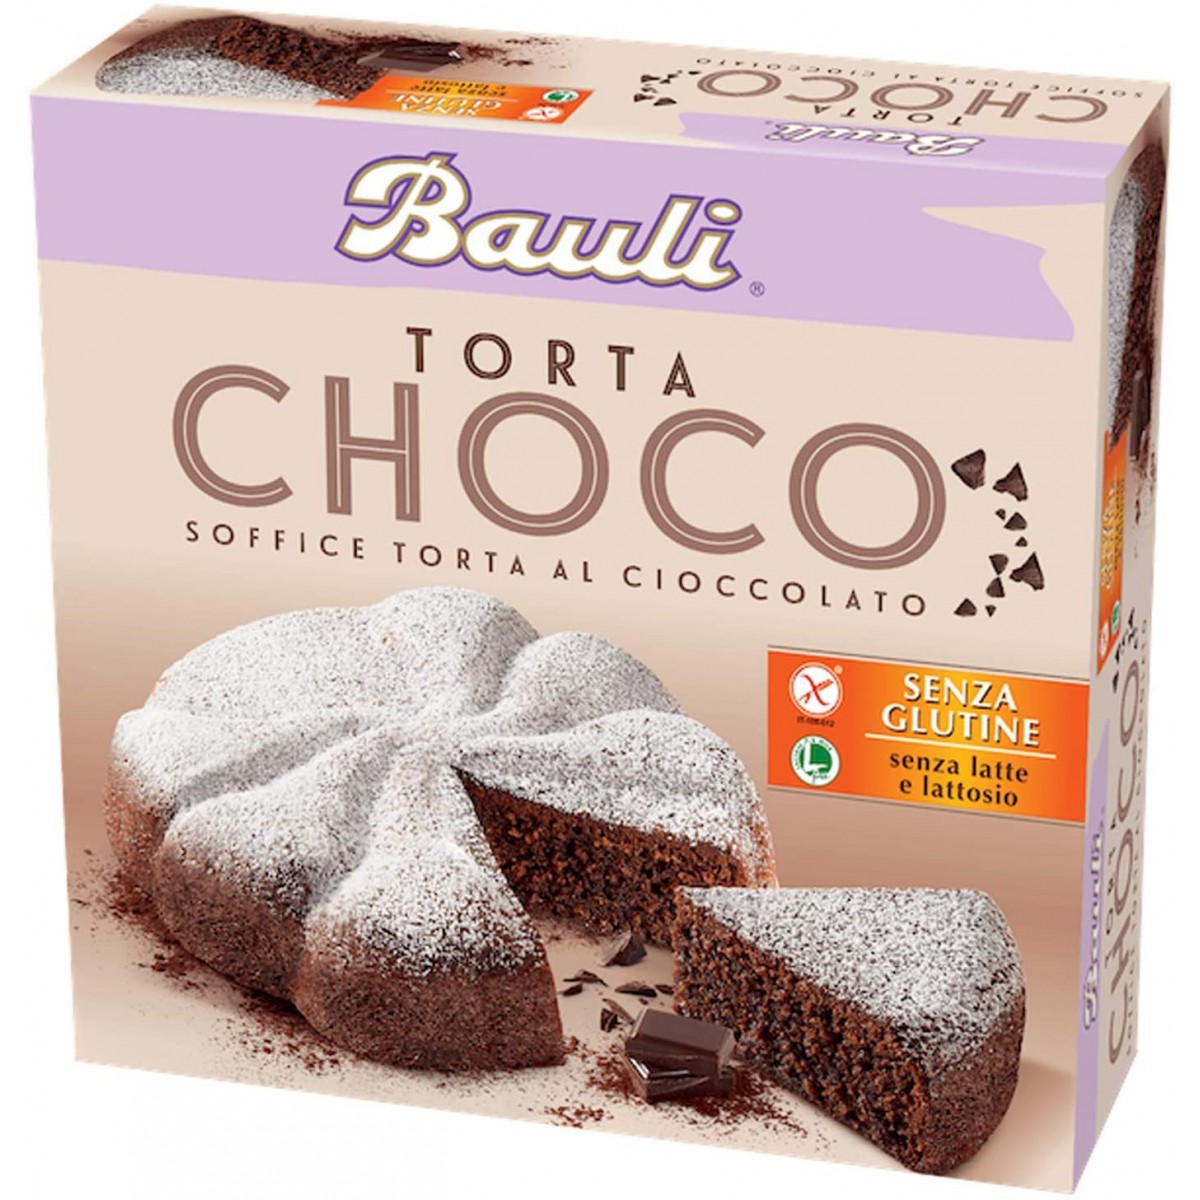 Torta Choco Bauli, soffice con cioccolato e cacao